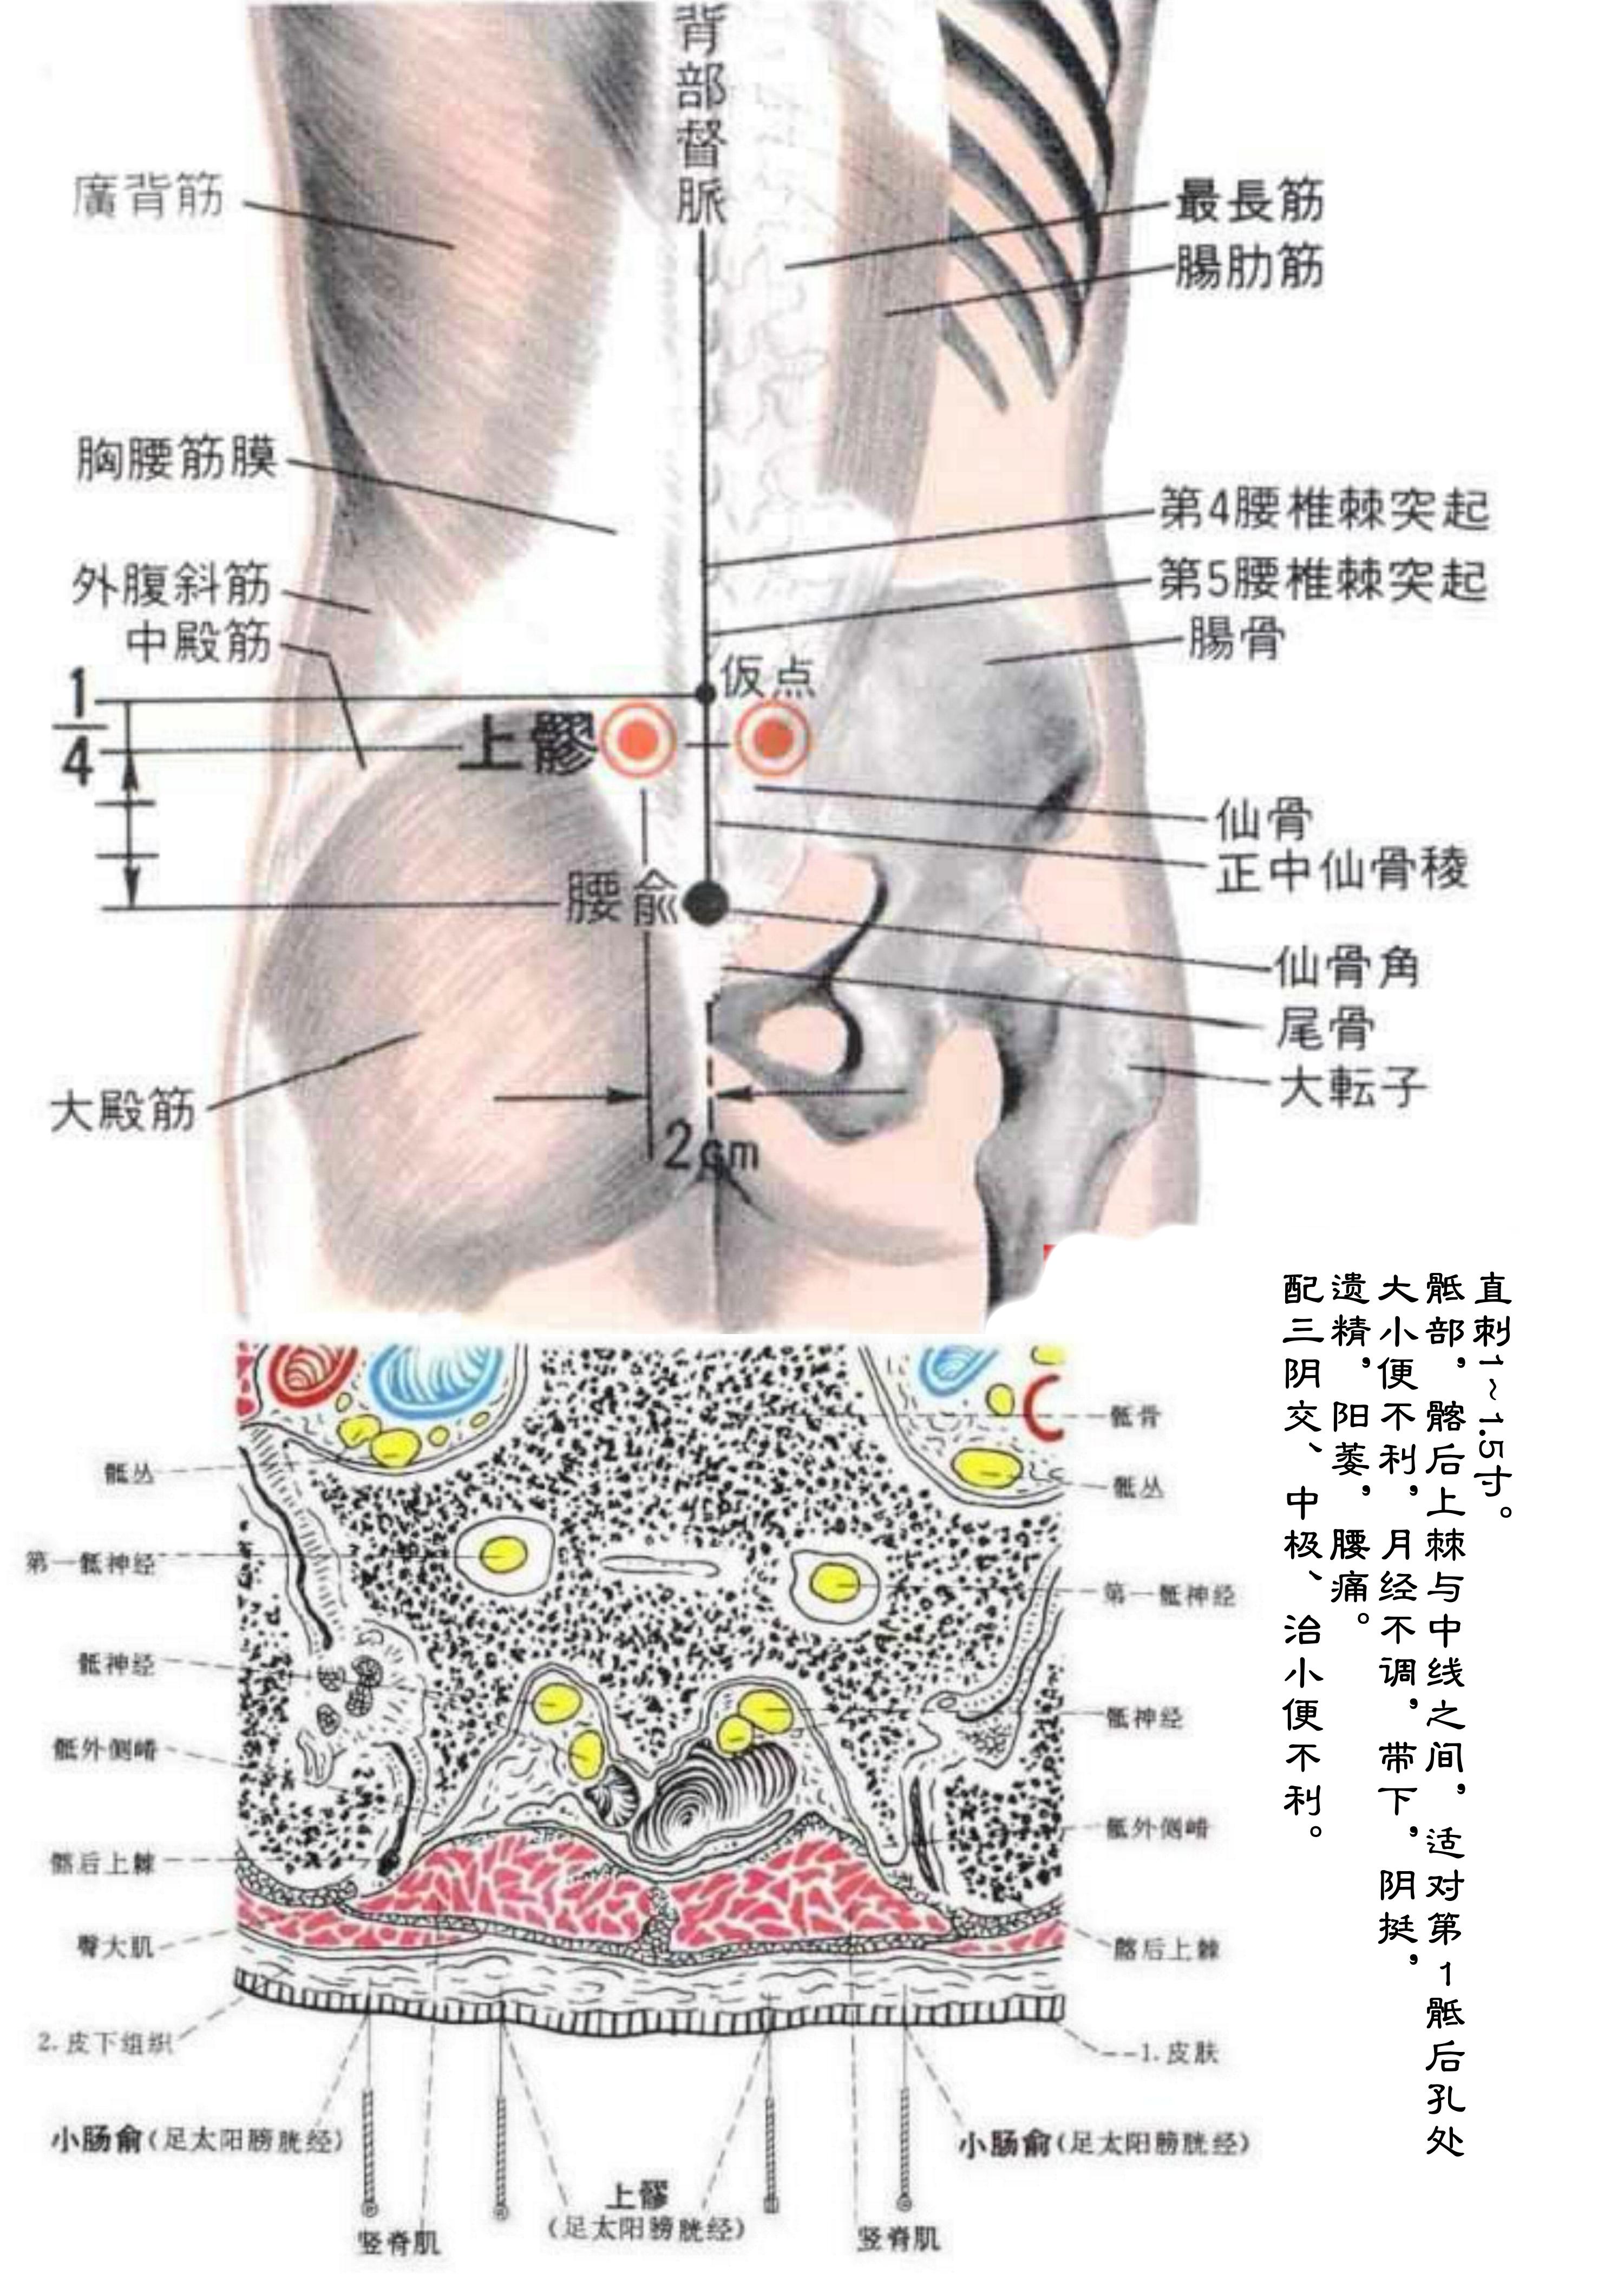 腿部膀胱经的准确位置图_39健康网_精编内容